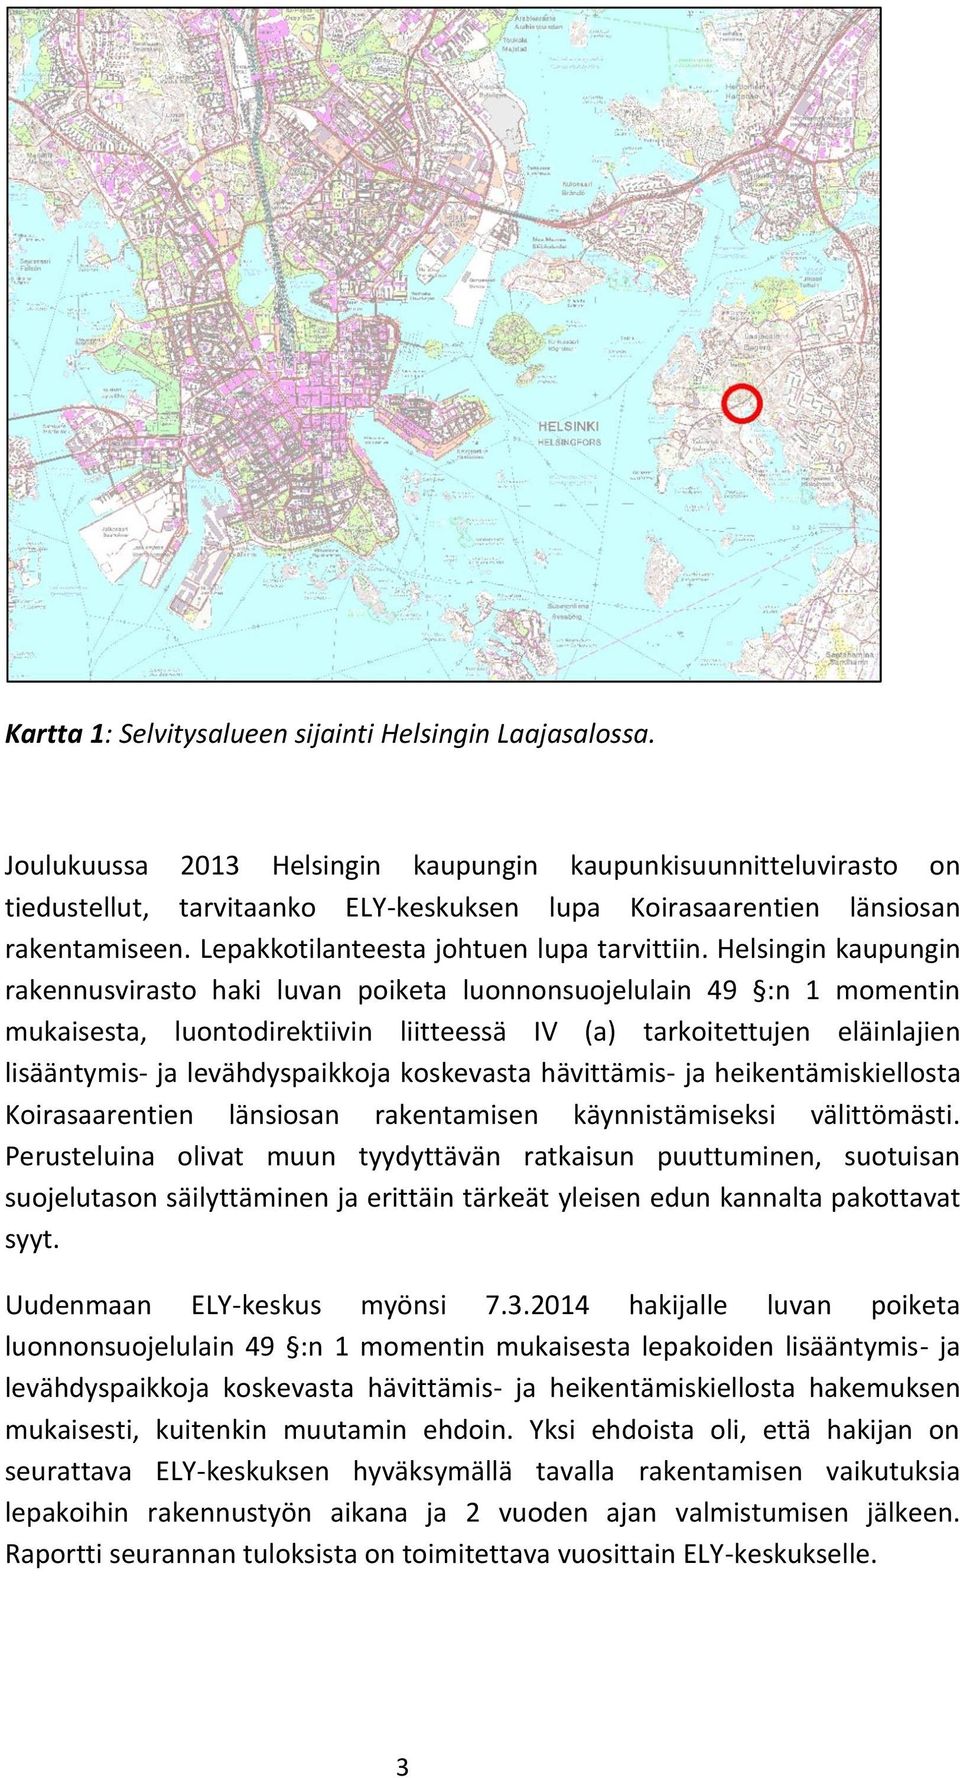 Helsingin kaupungin rakennusvirasto haki luvan poiketa luonnonsuojelulain 49 :n 1 momentin mukaisesta, luontodirektiivin liitteessä IV (a) tarkoitettujen eläinlajien lisääntymis- ja levähdyspaikkoja